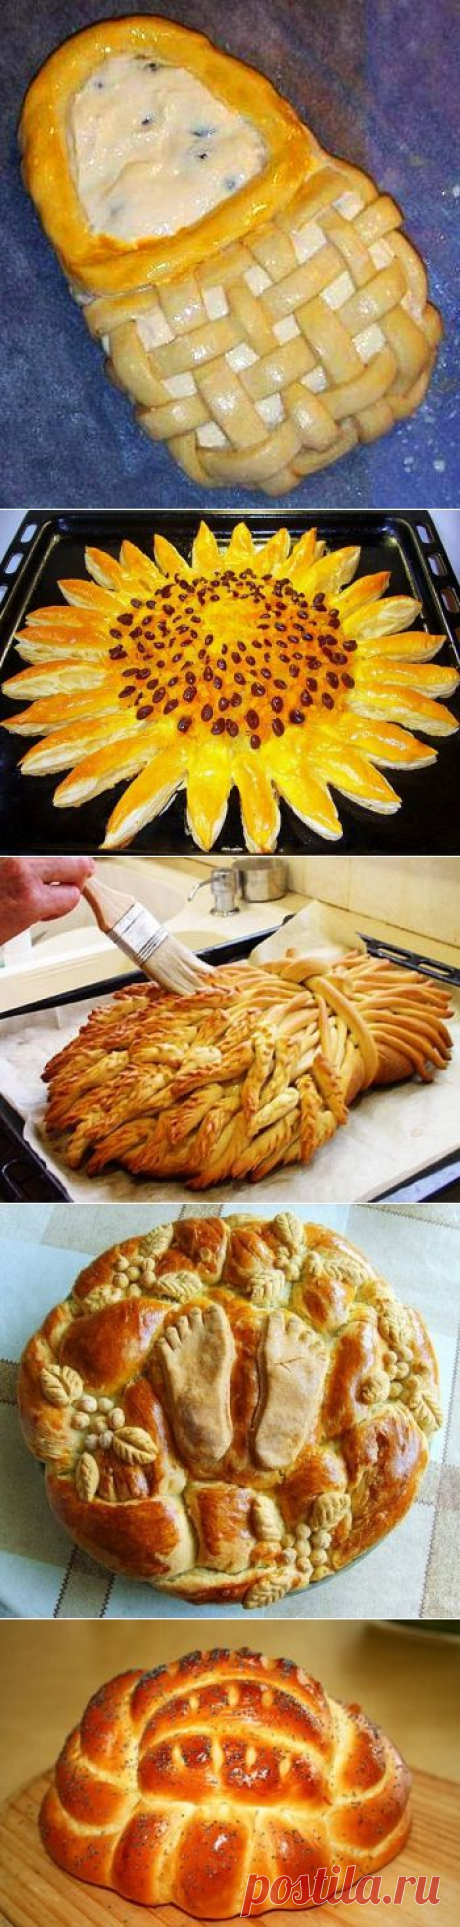 (+1) тема - Как красиво разделать тесто: пироги, пирожки, булочки и плетёнки | Полезные советы